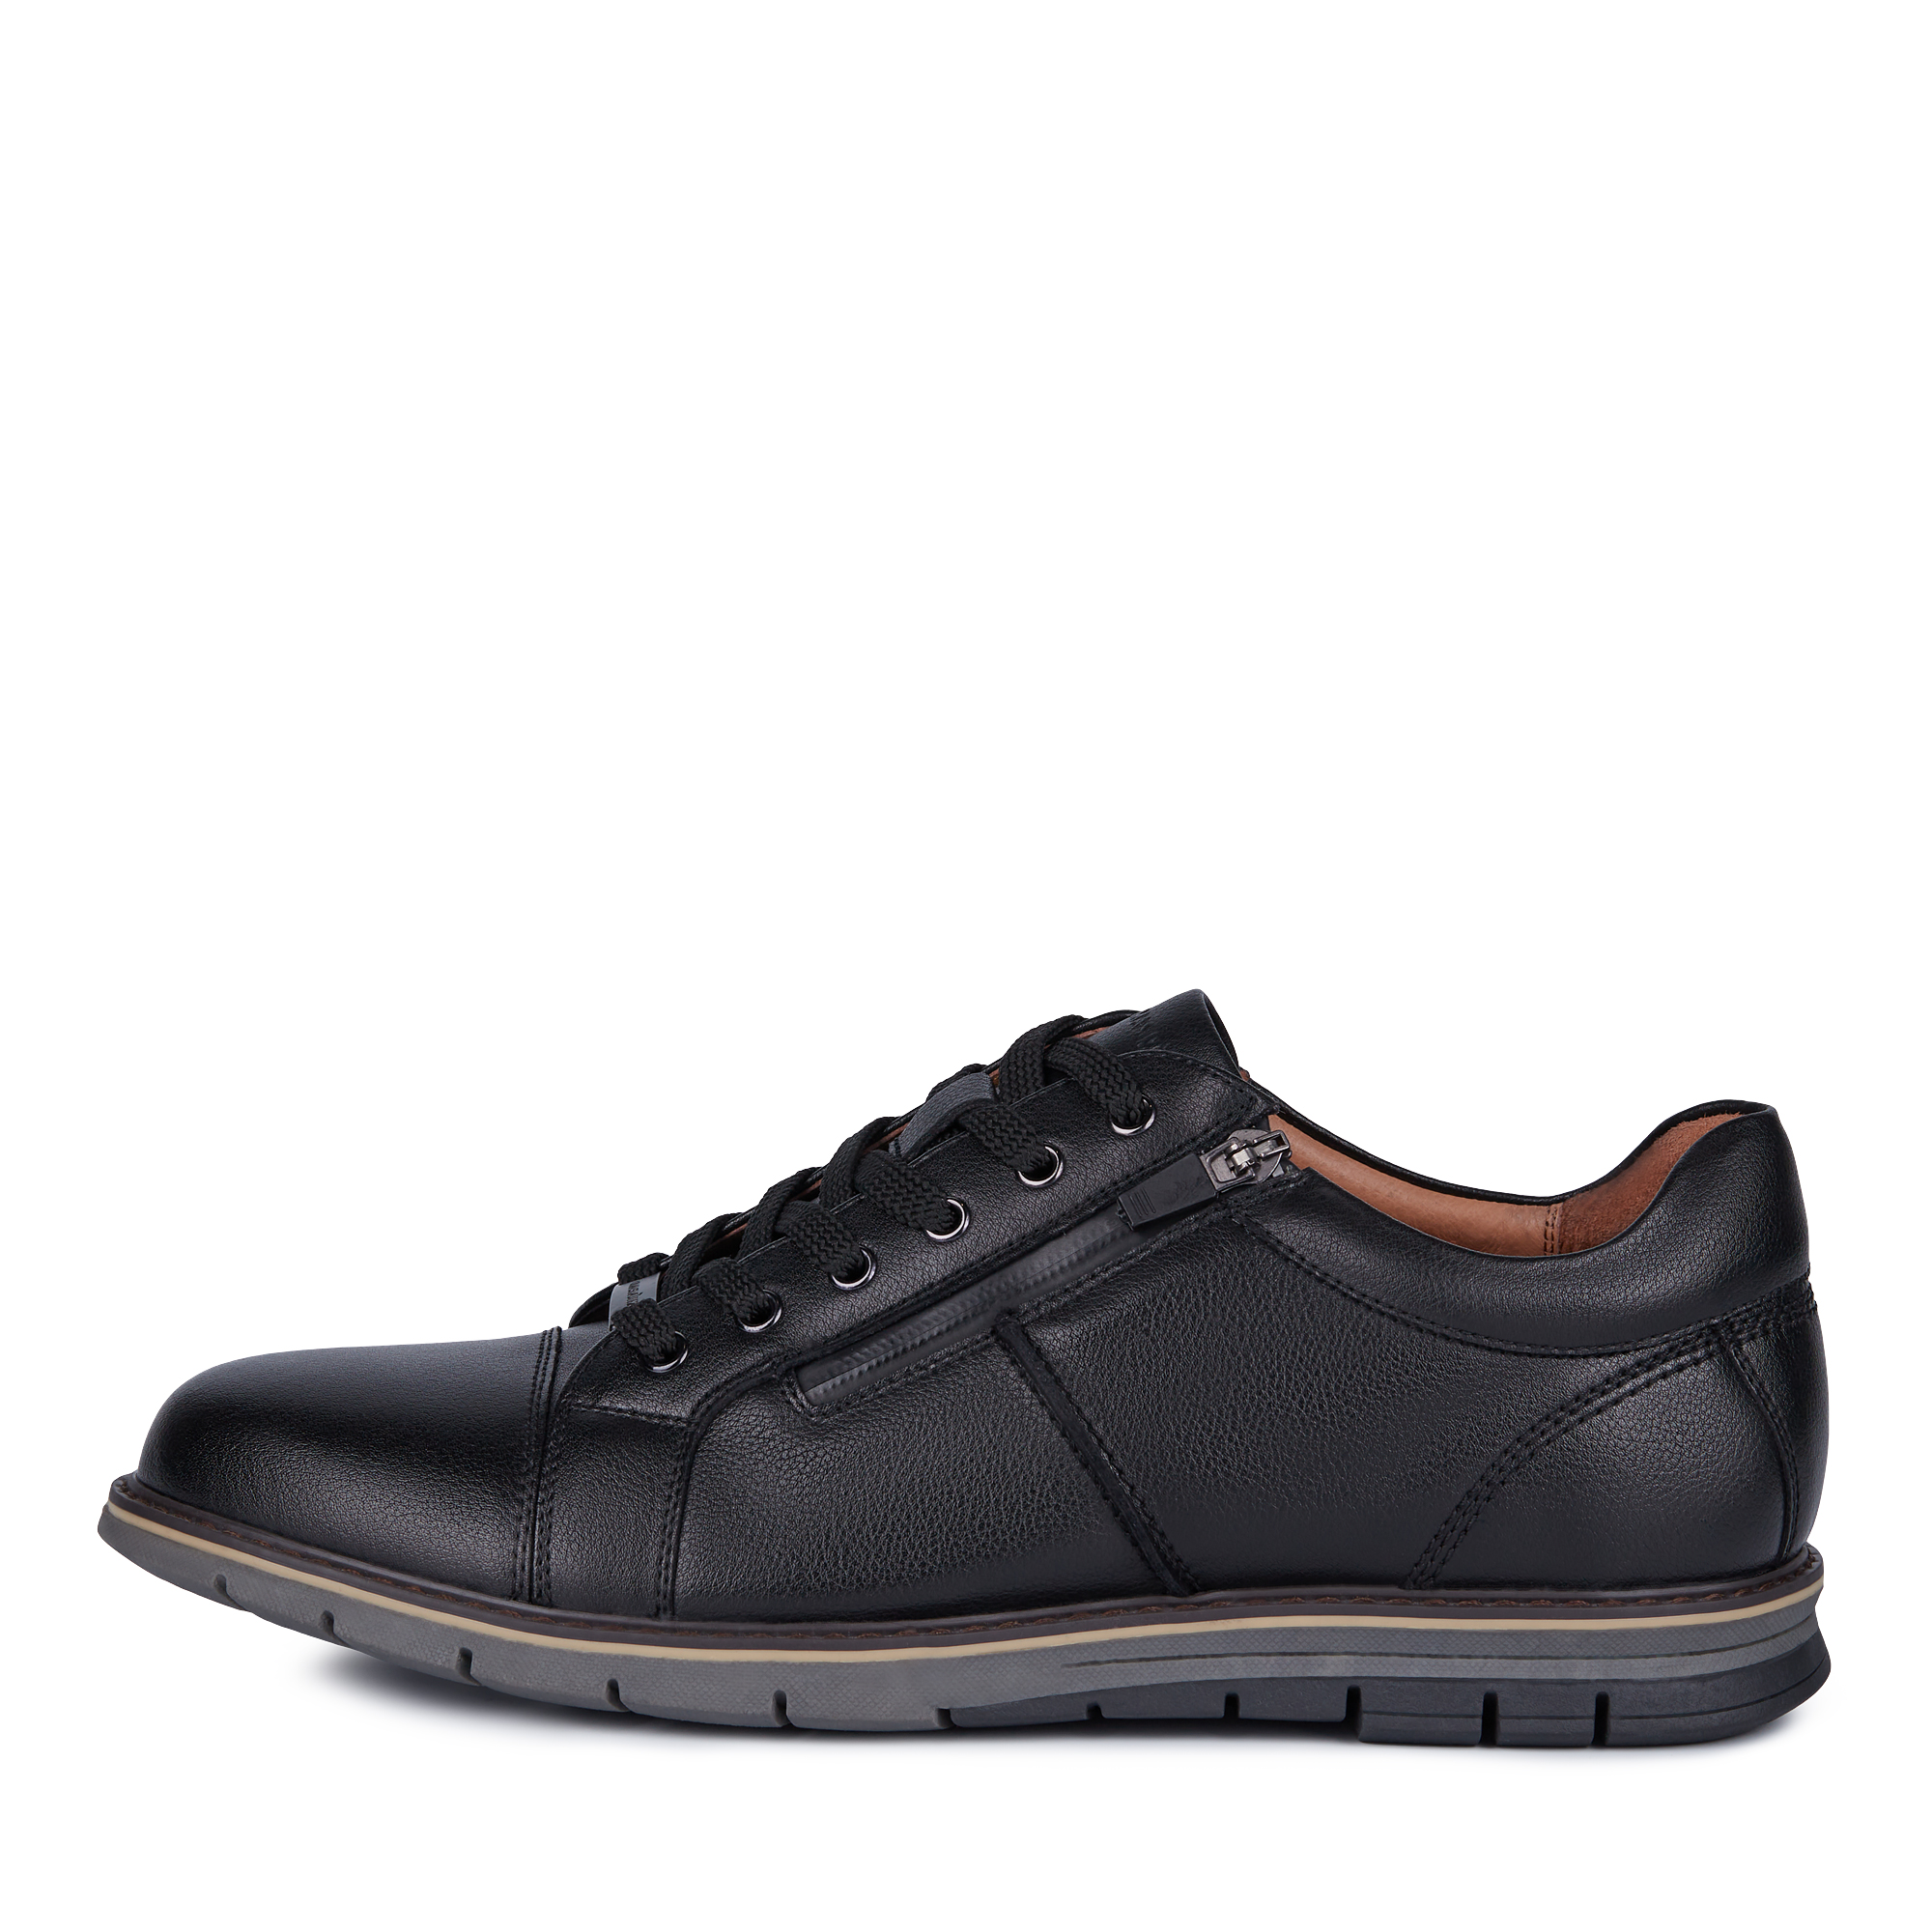 Туфли/полуботинки Thomas Munz 058-909A-1602, цвет черный, размер 40 - фото 1